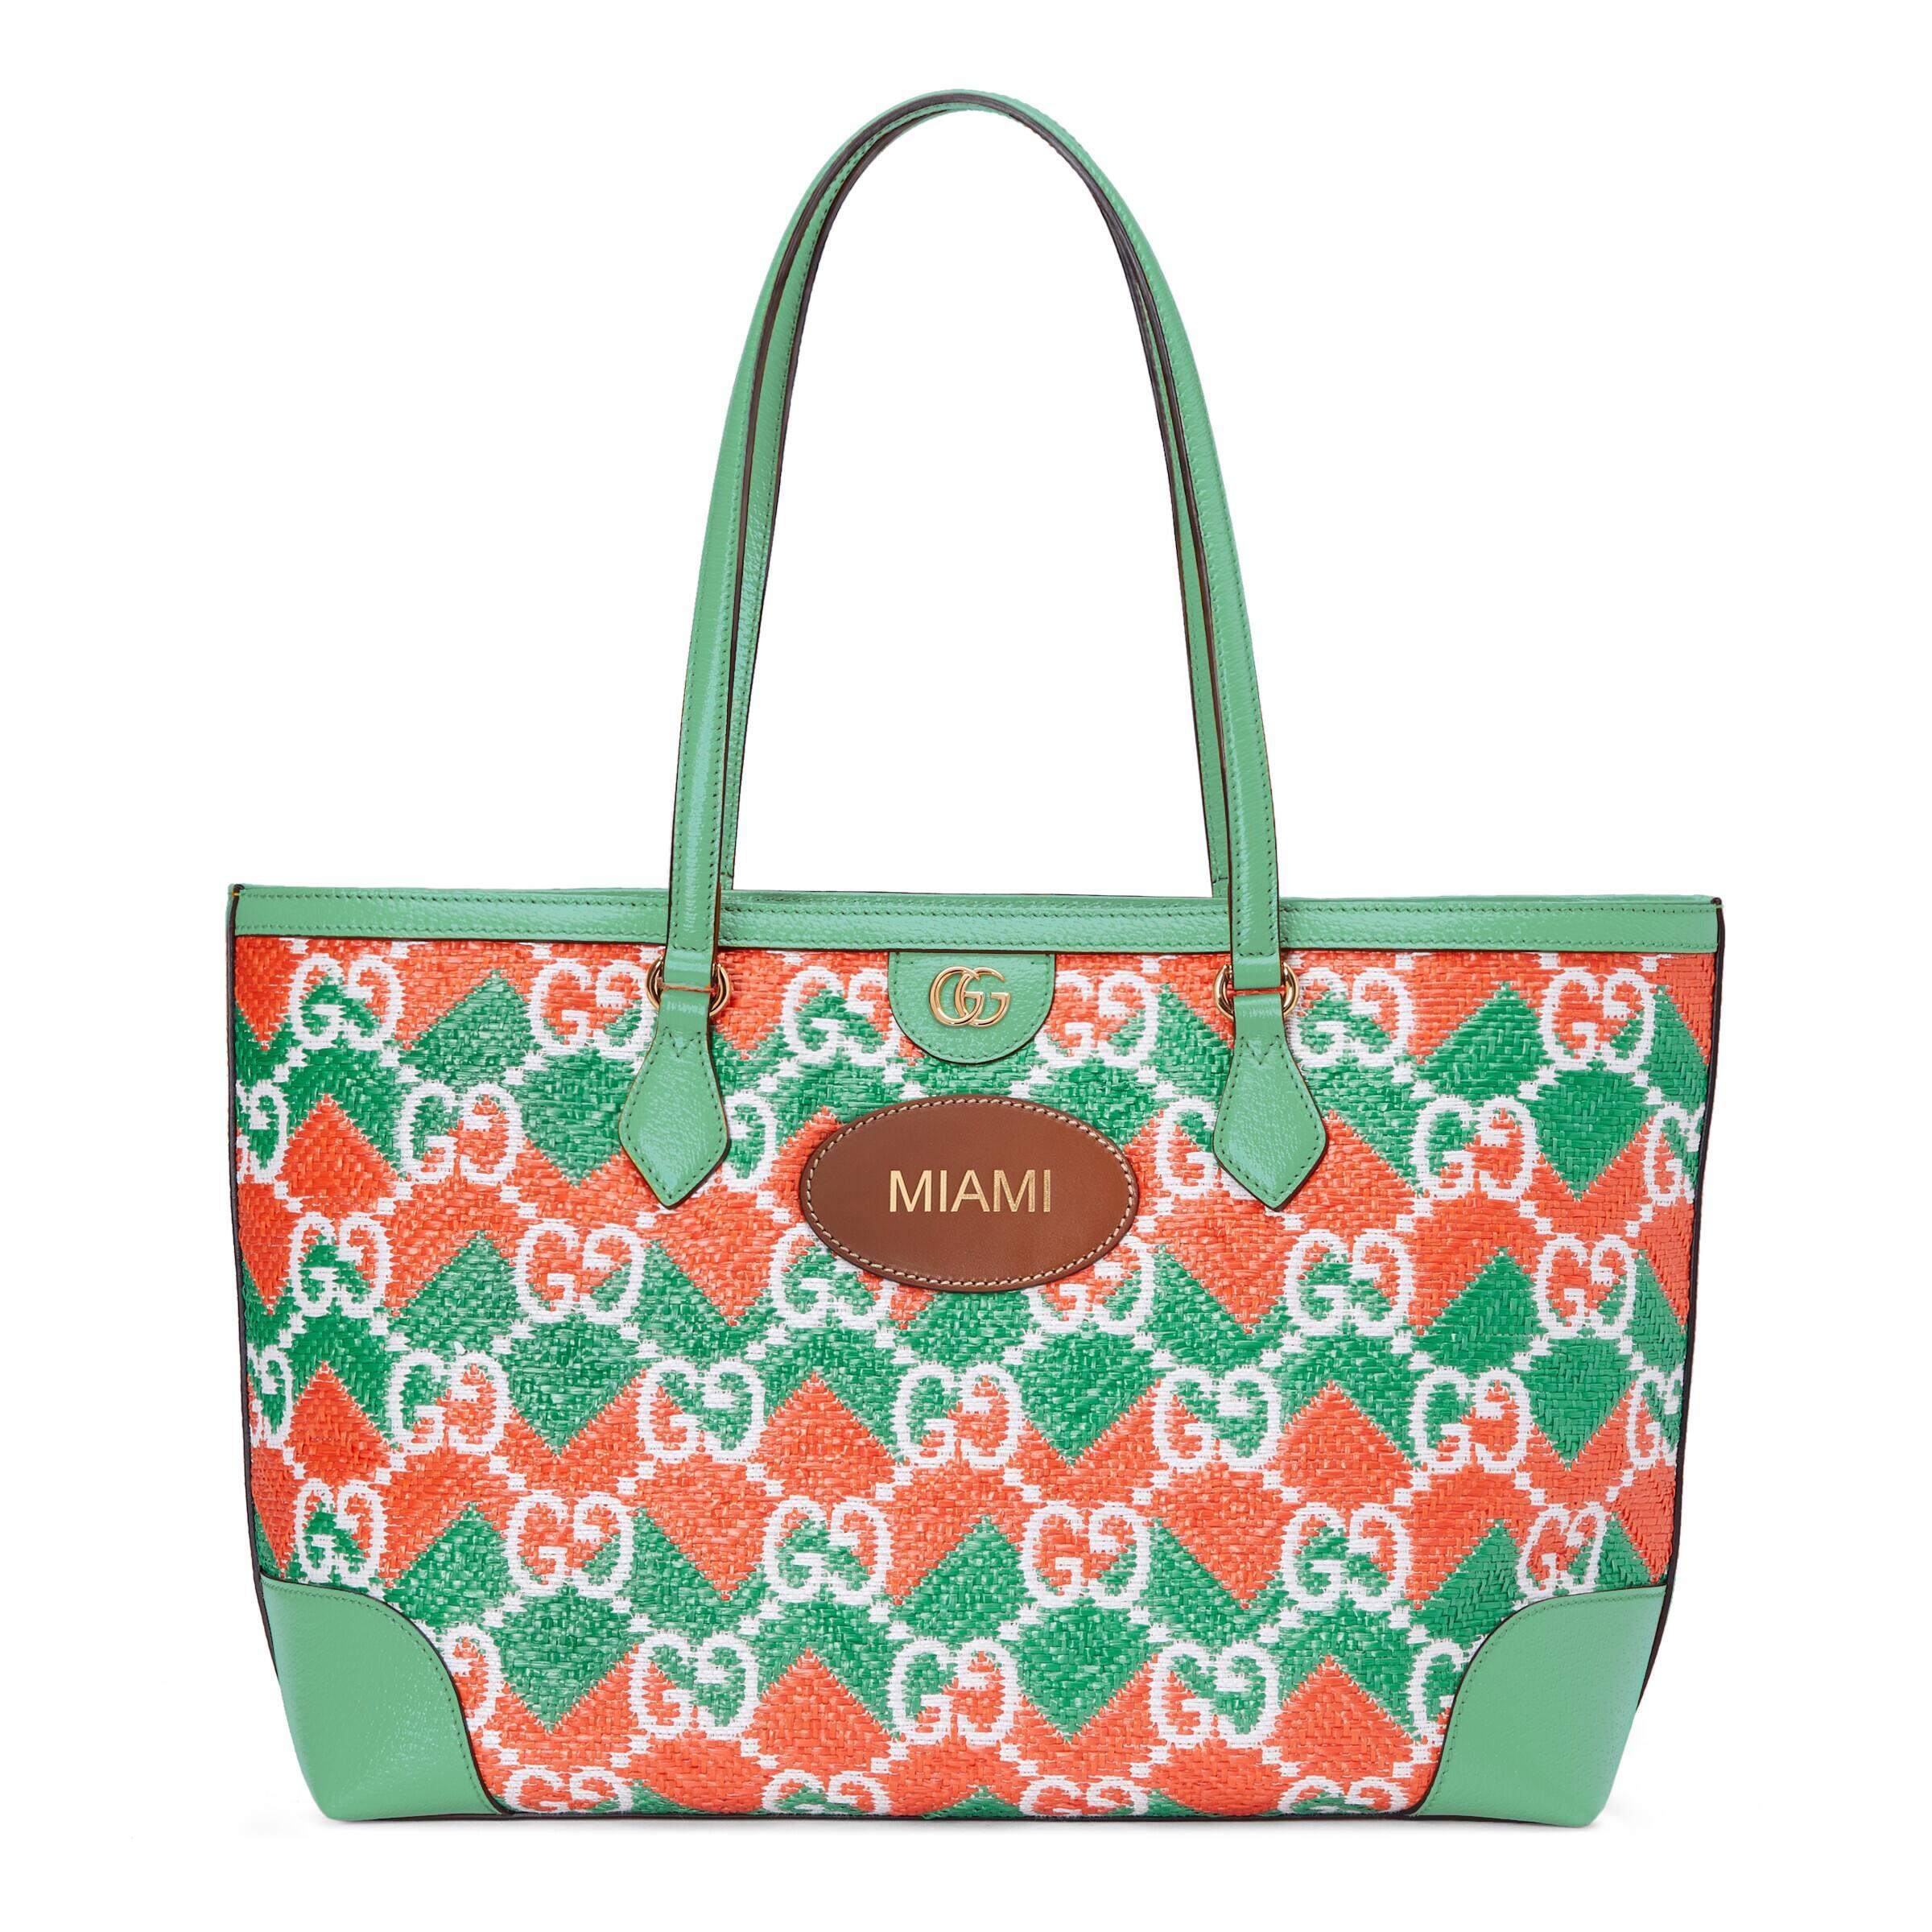 Gucci 'miami' Straw Effect Tote Bag in Orange | Lyst